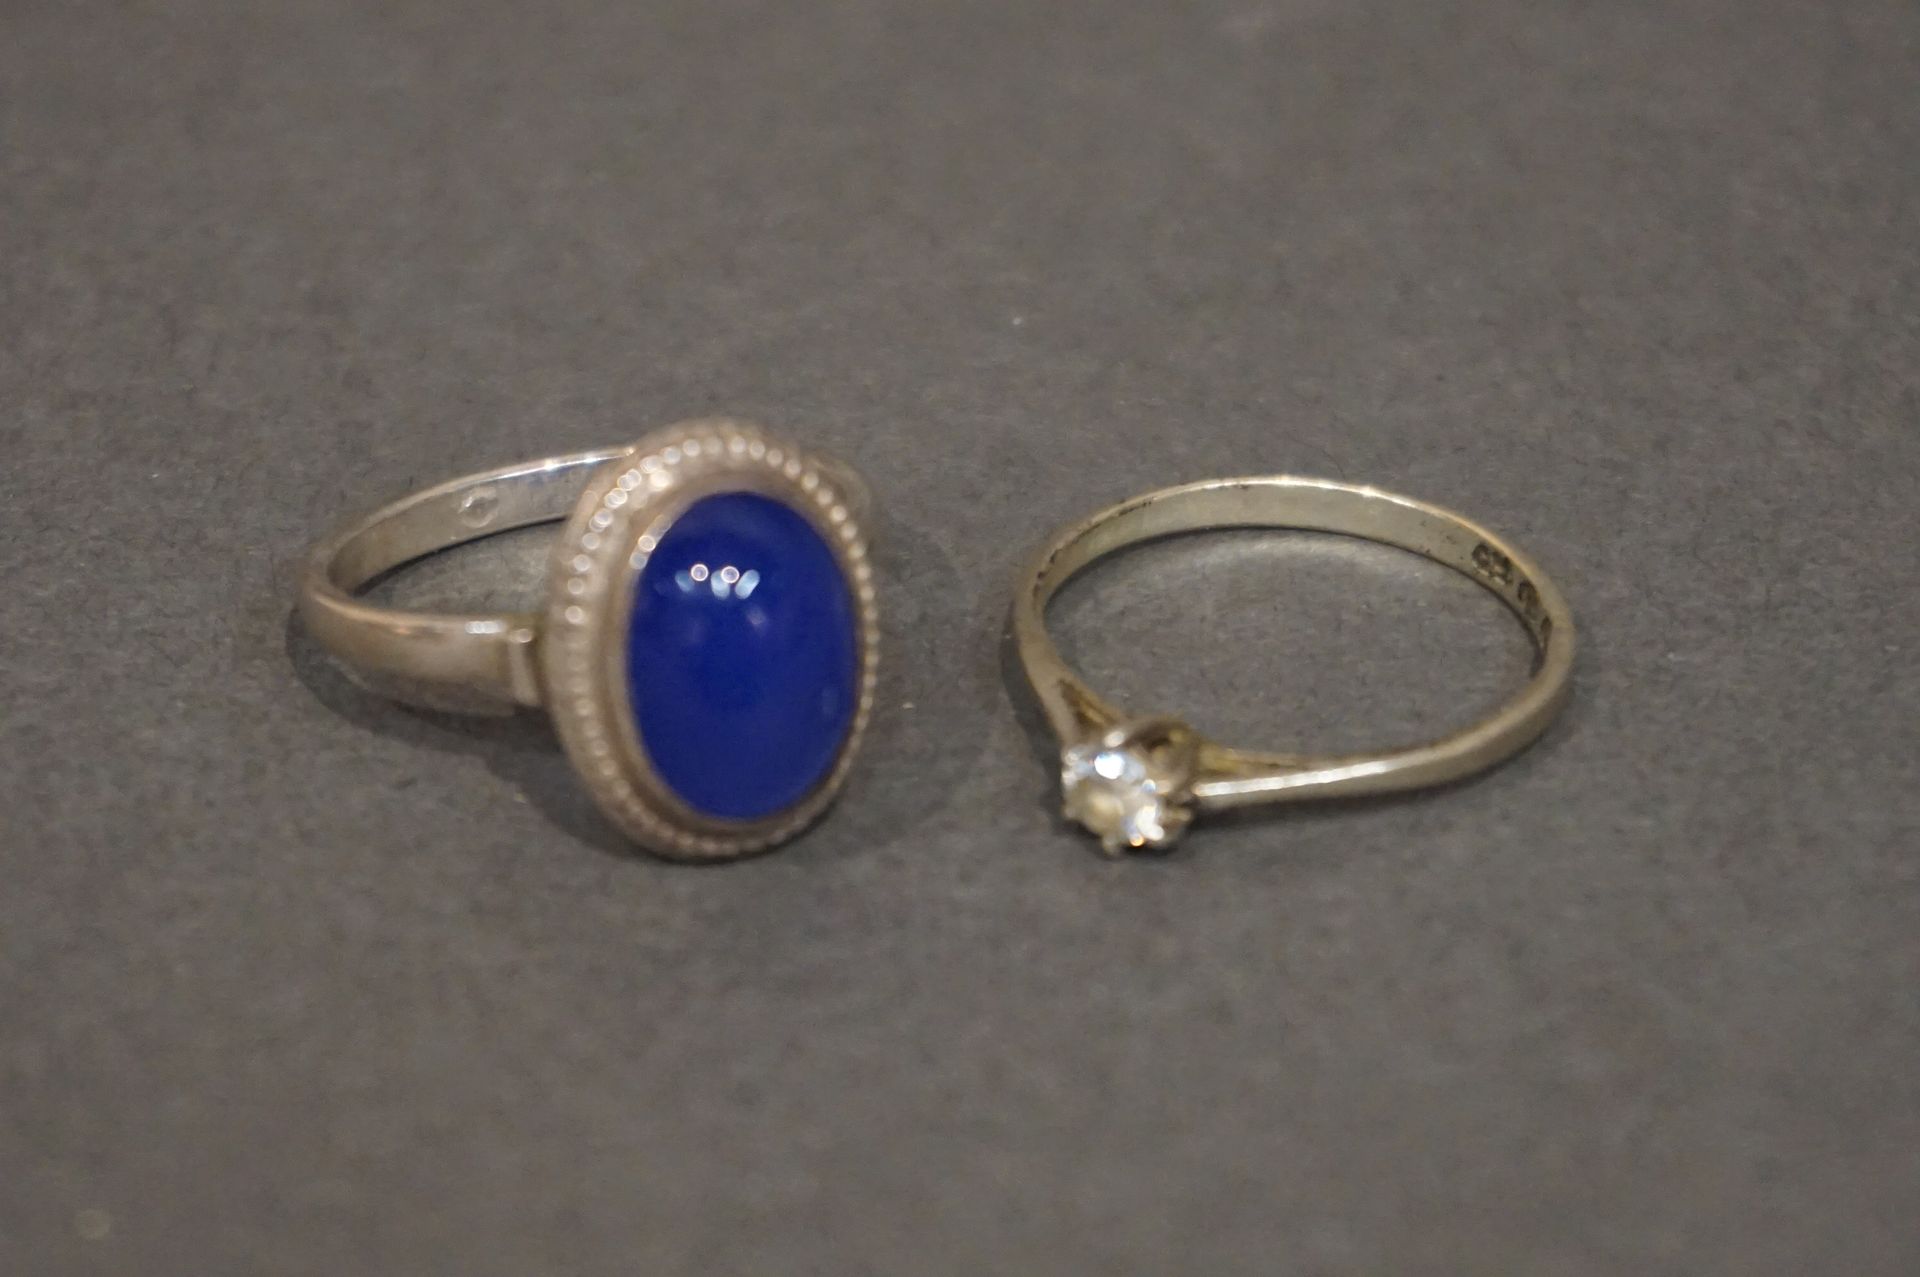 Bague 镶嵌凸圆形蓝色宝石的银戒指和镶嵌白色宝石的银戒指（总重量：4.5克）